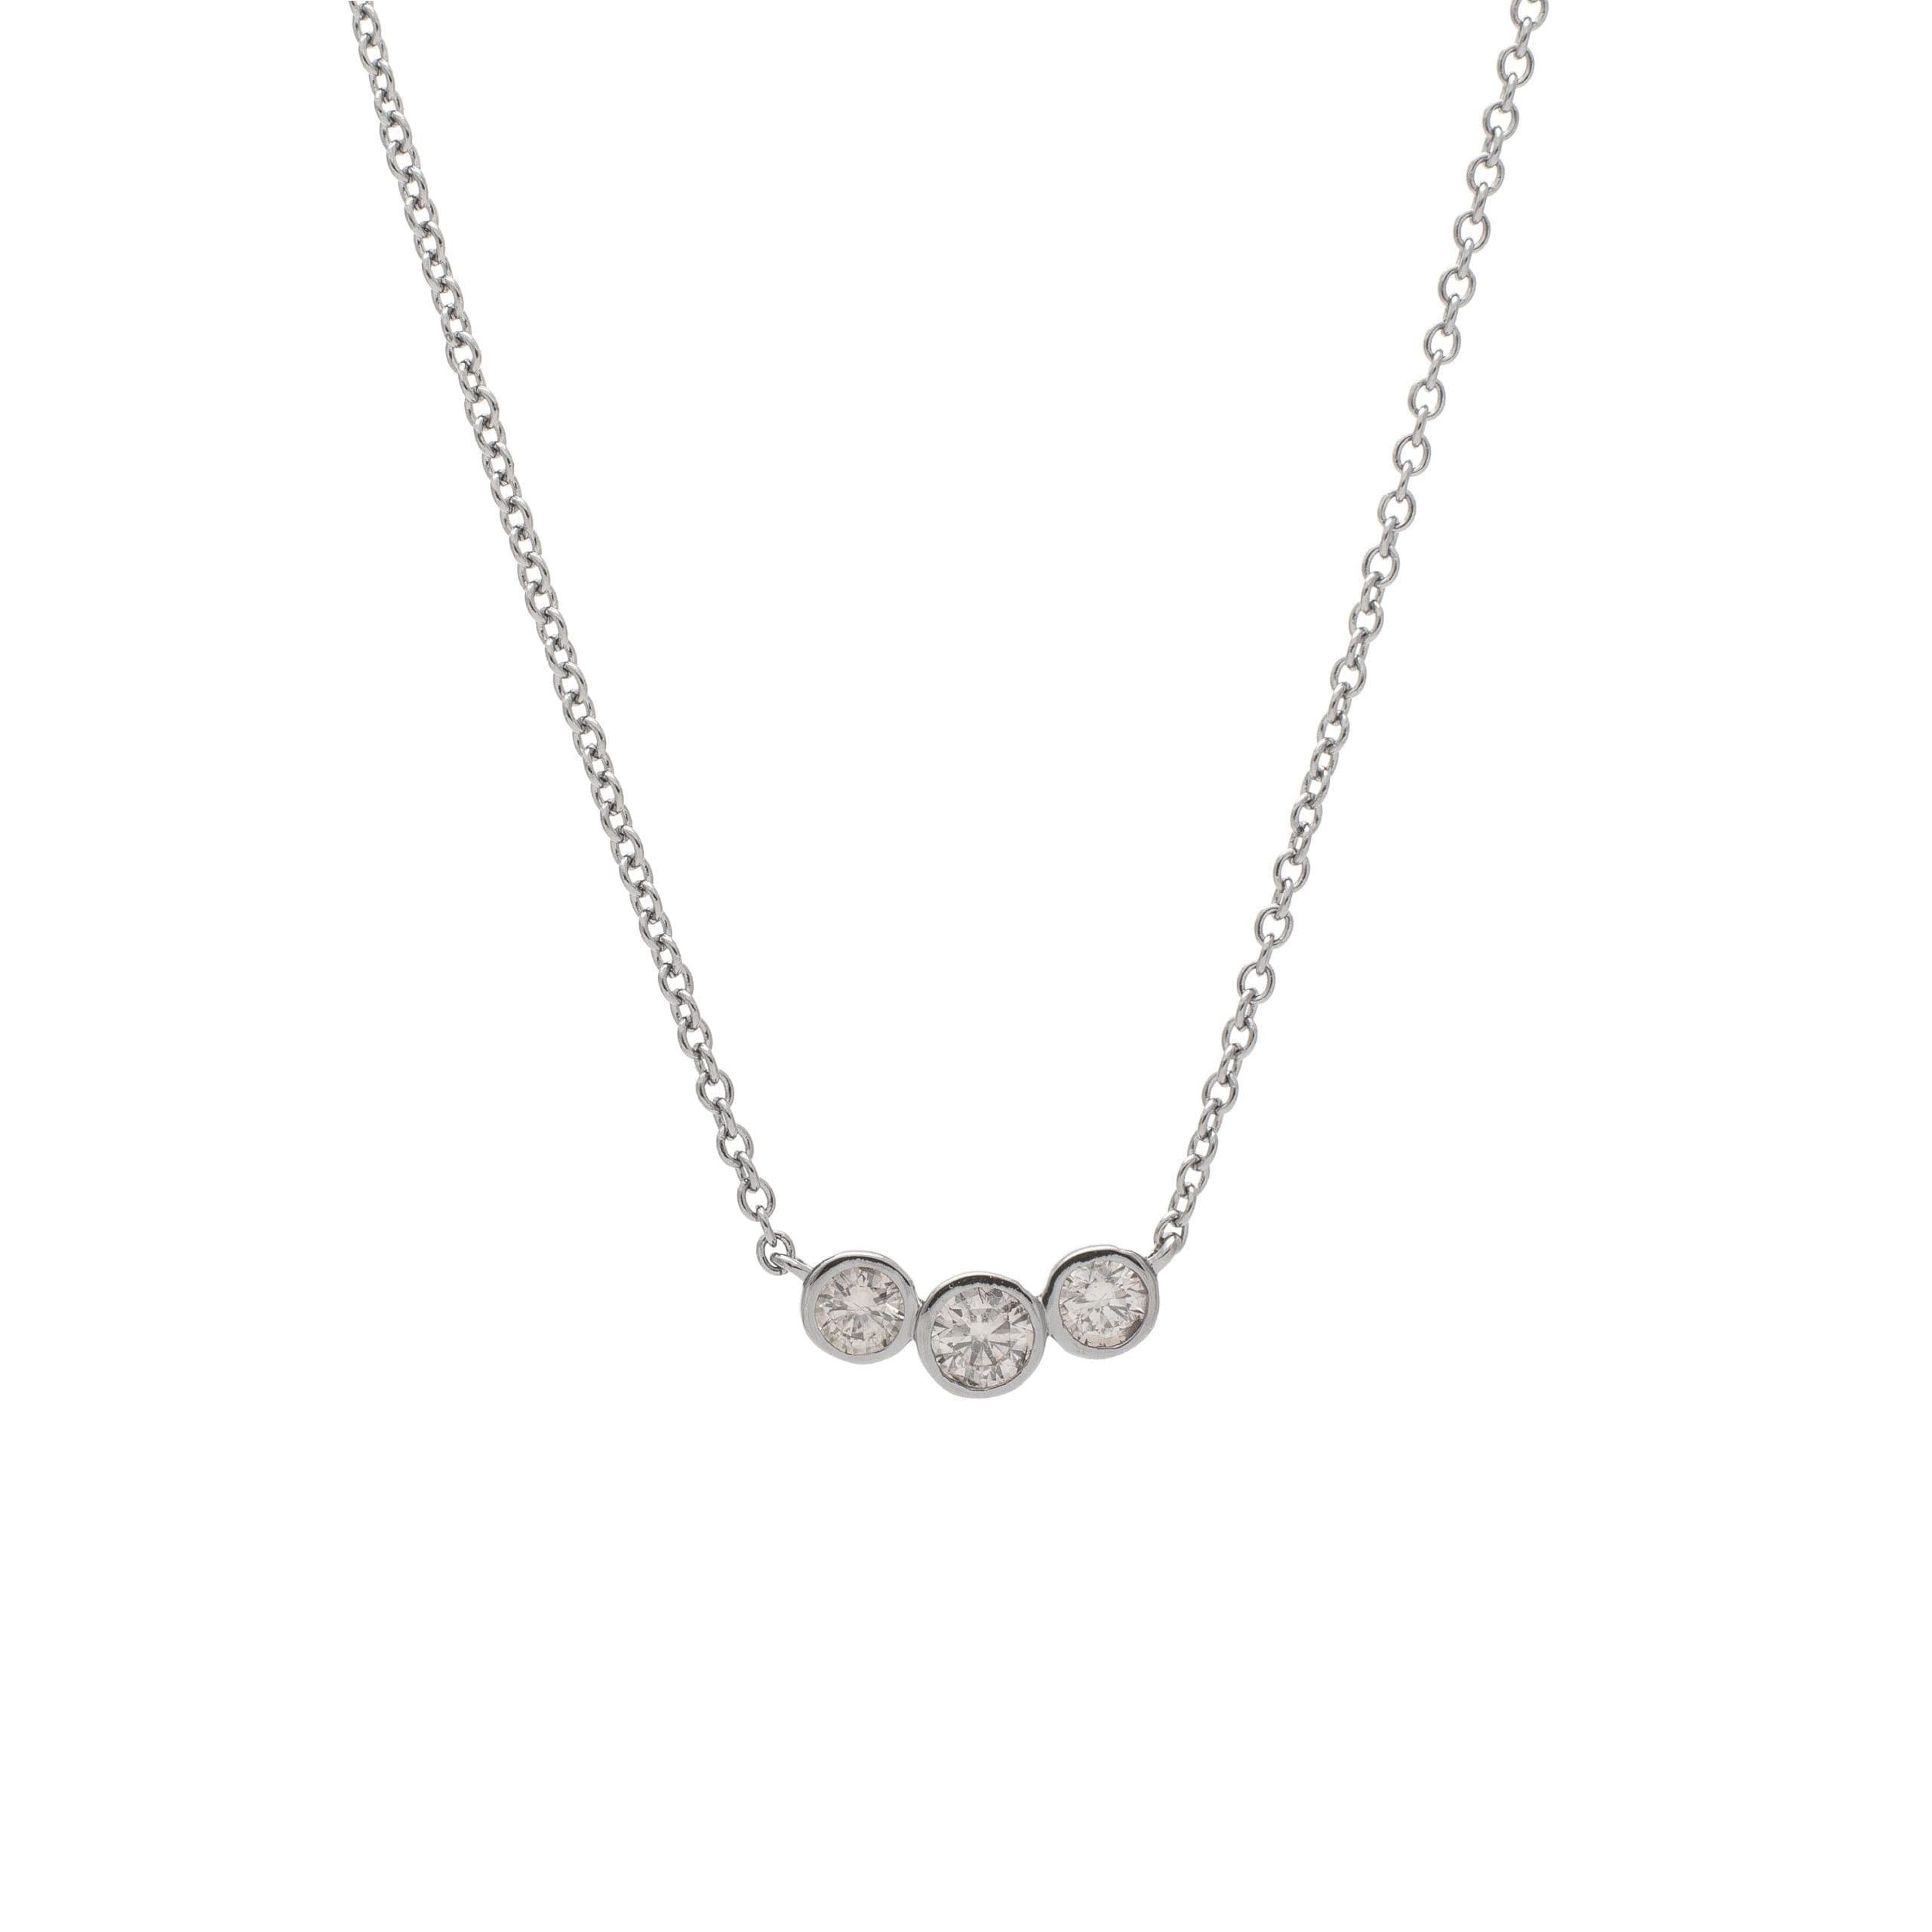 3 Diamond Bezel Set Necklace Sterling Silver